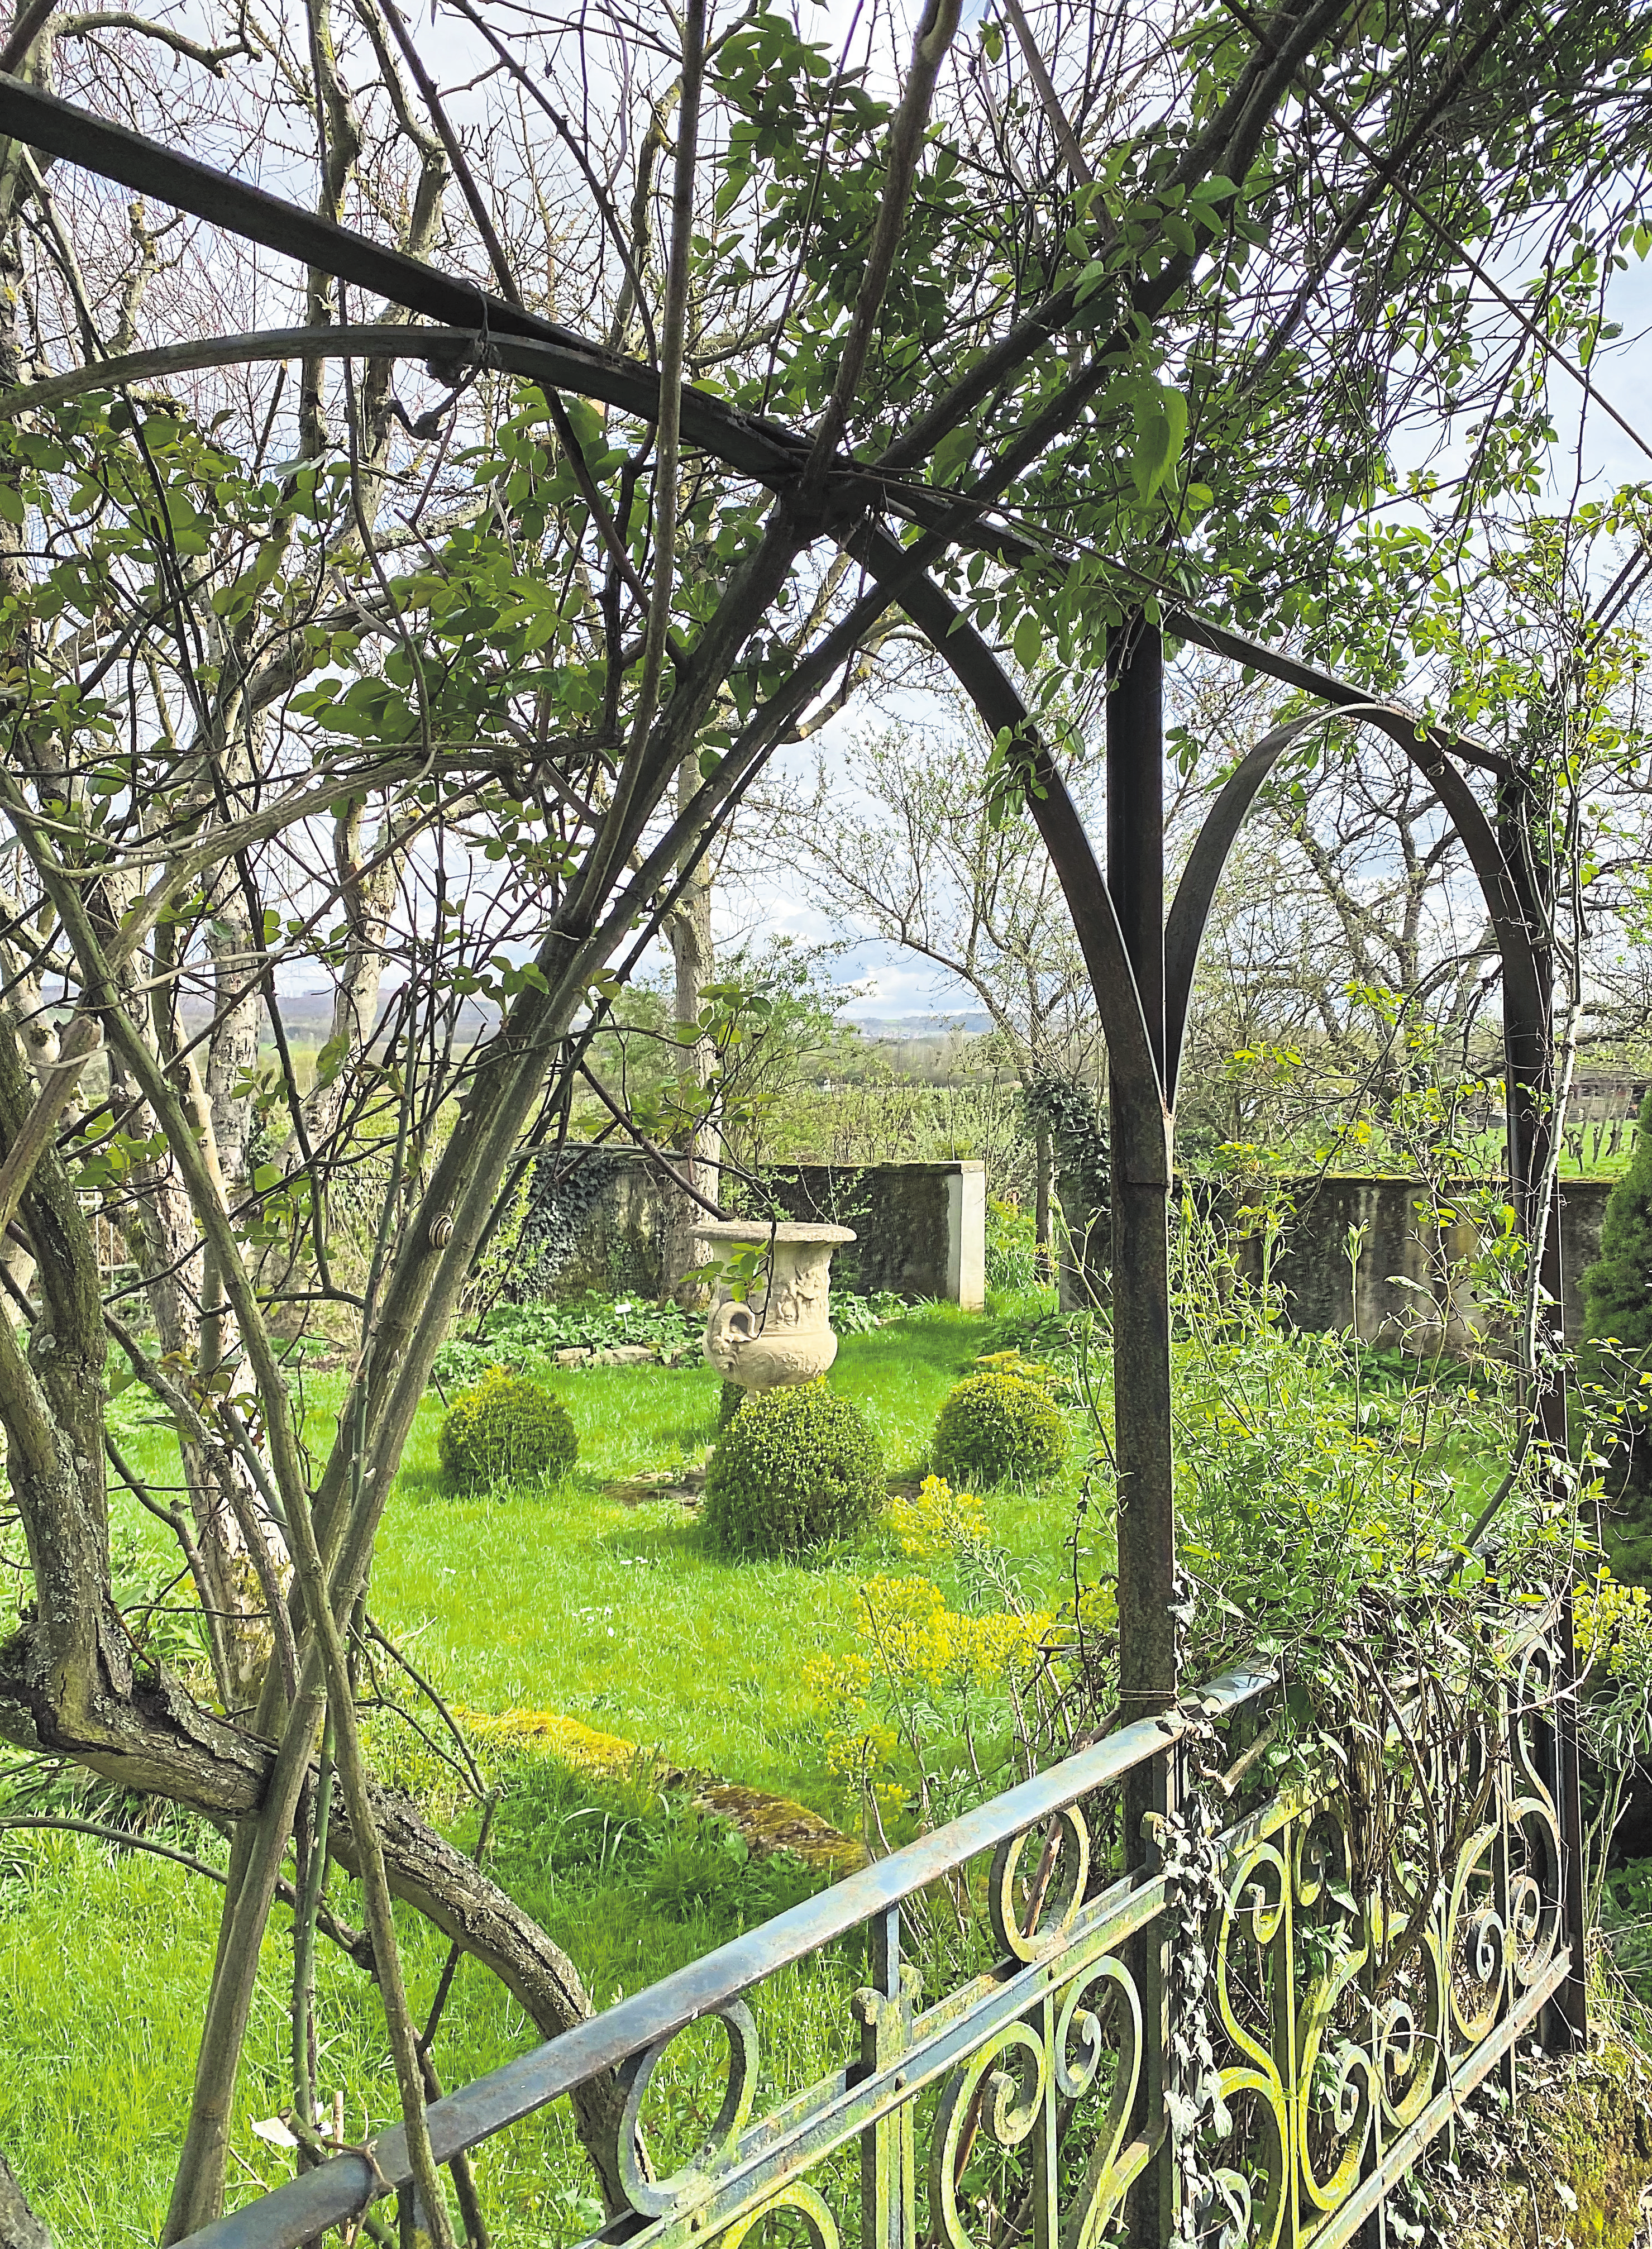 Le jardin sauvage est un endroit de rêve qui inspire, fascine et apaise les esprits. Deborah Rimi